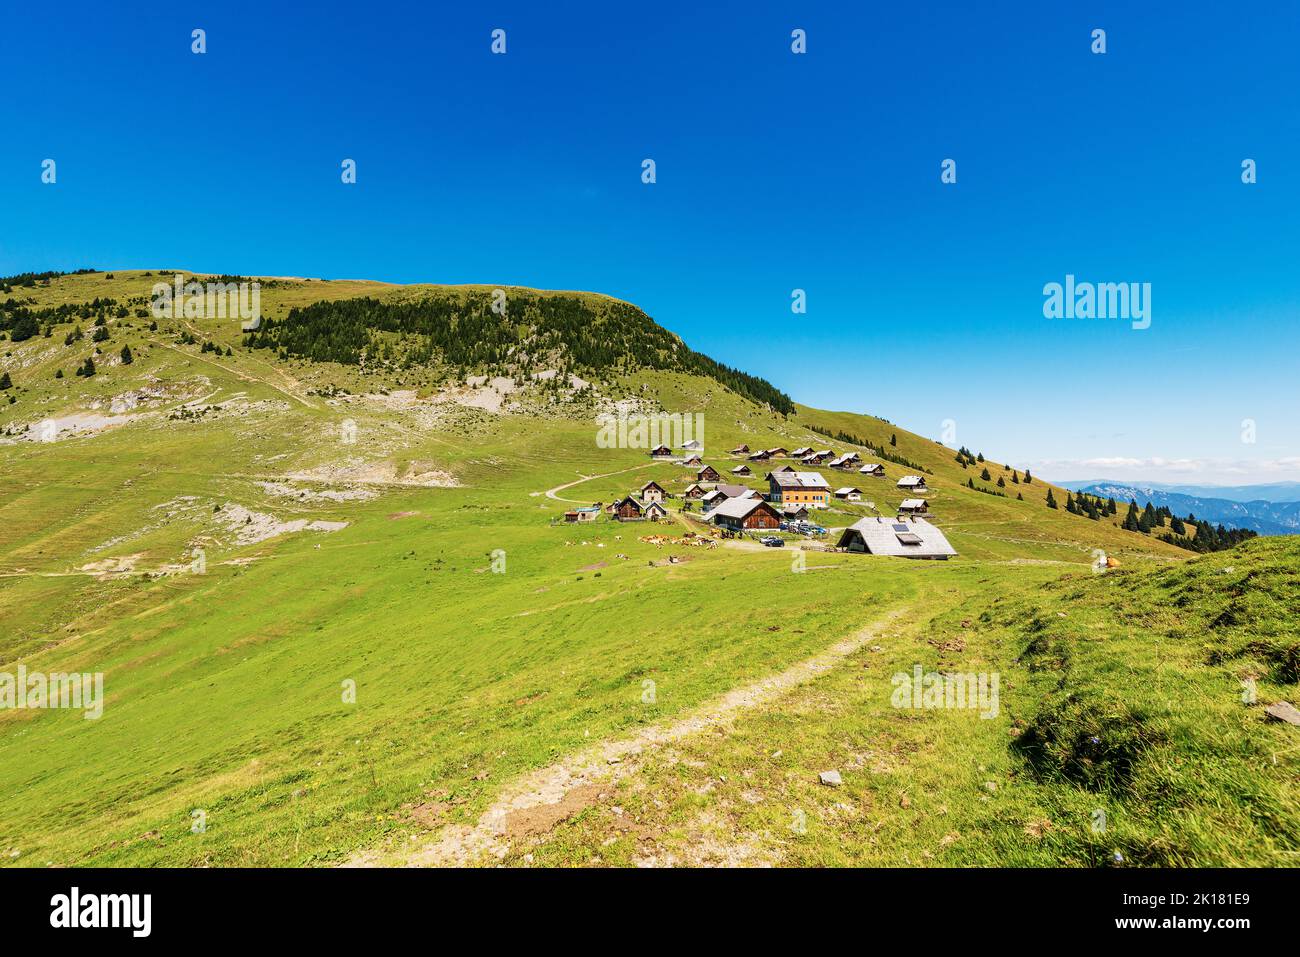 Village and Osternig or Oisternig mountain peak, Carnic Alps, Feistritz an der Gail municipality, Austria, Carinthia, Europe. Italy-Austria Border. Stock Photo